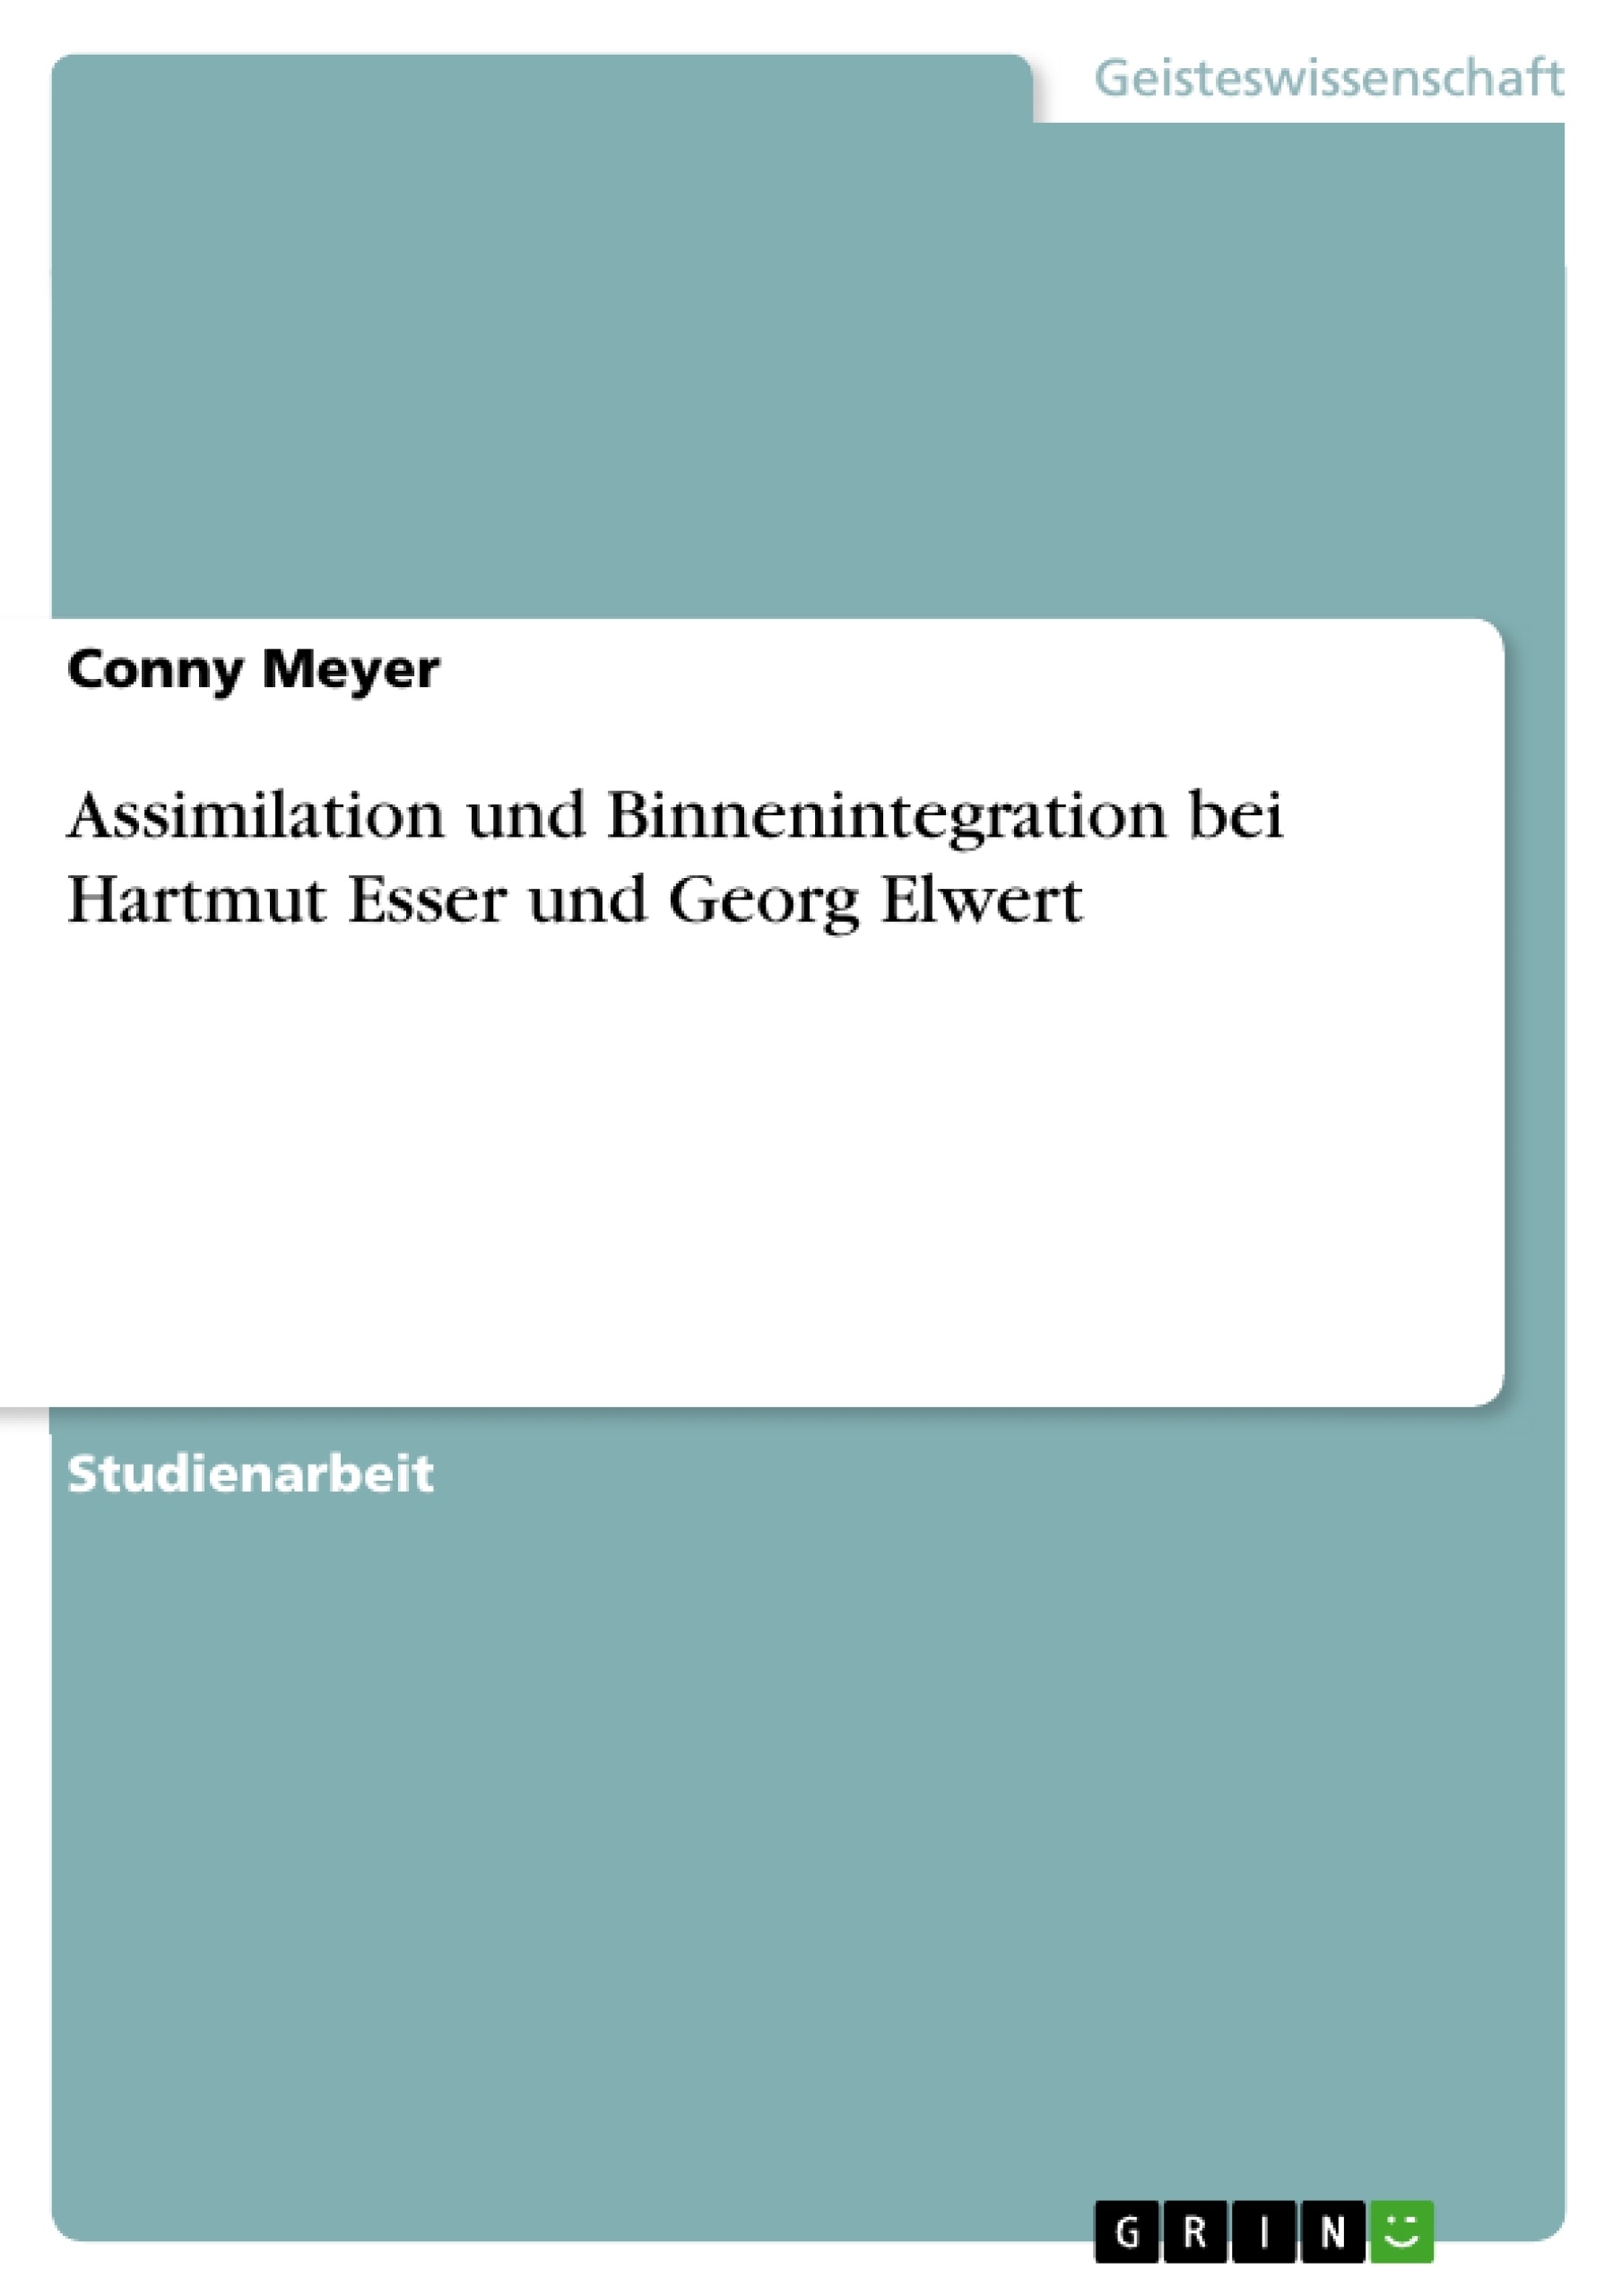 Título: Assimilation und Binnenintegration bei Hartmut Esser und Georg Elwert